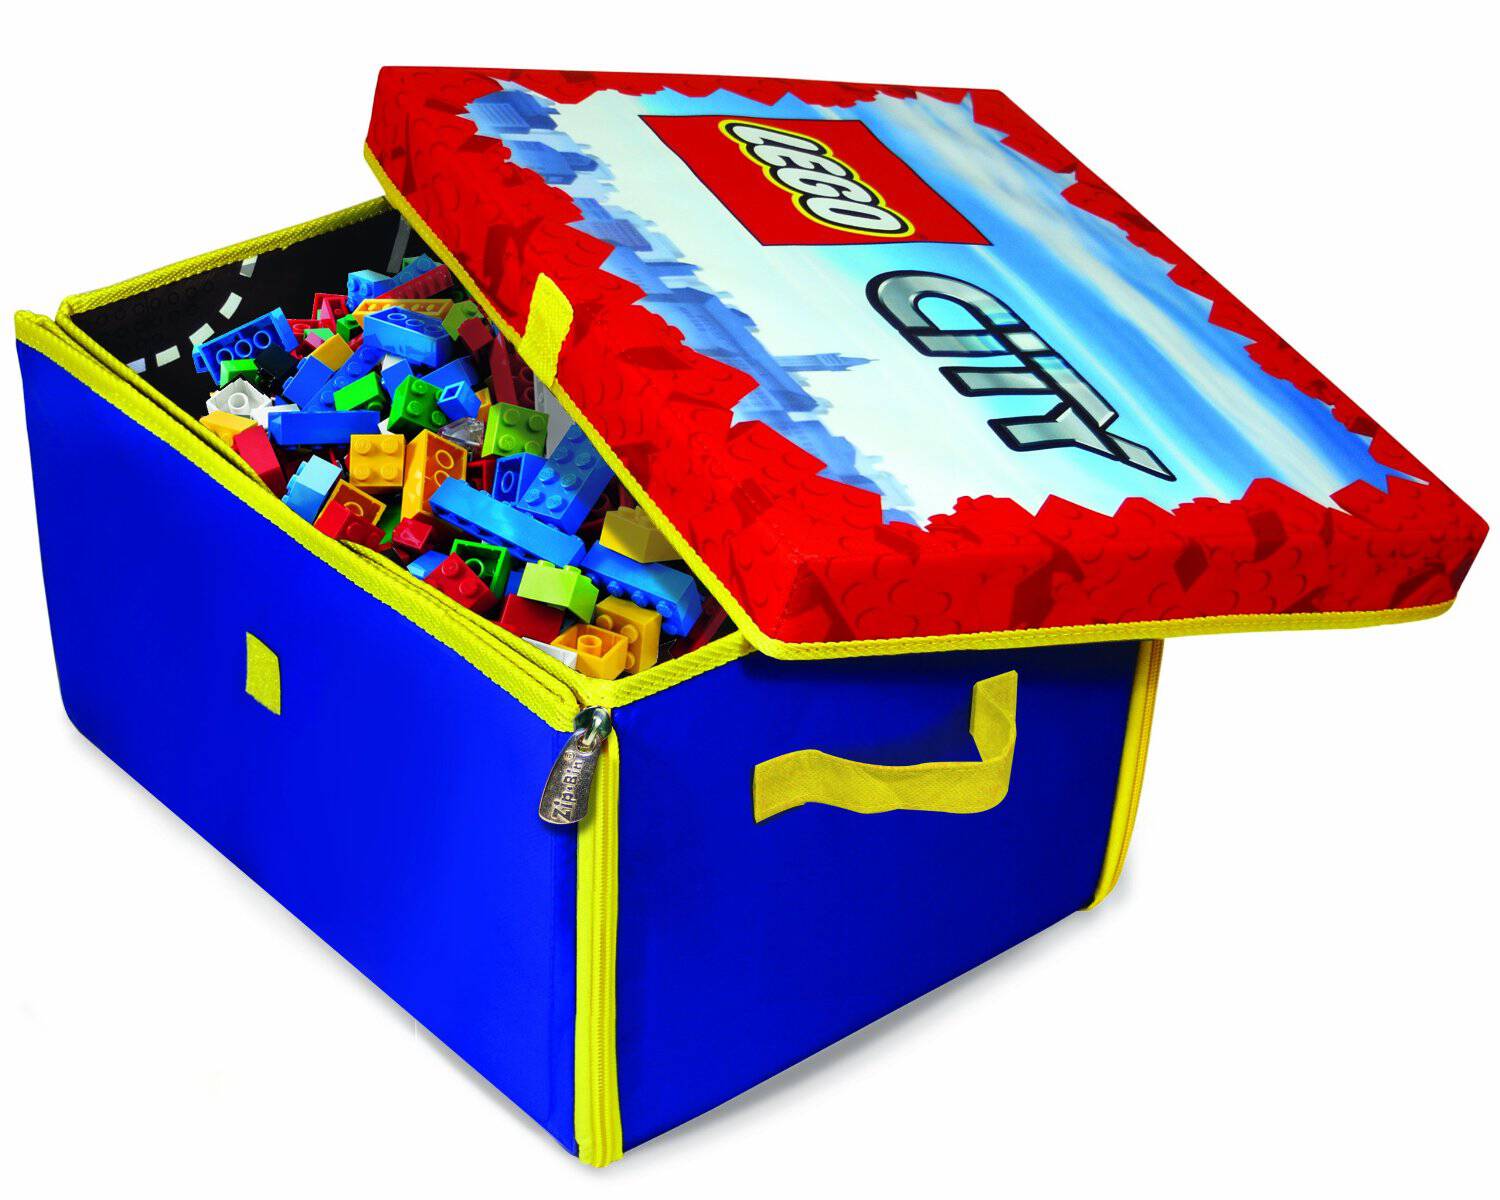 Lego storage bin